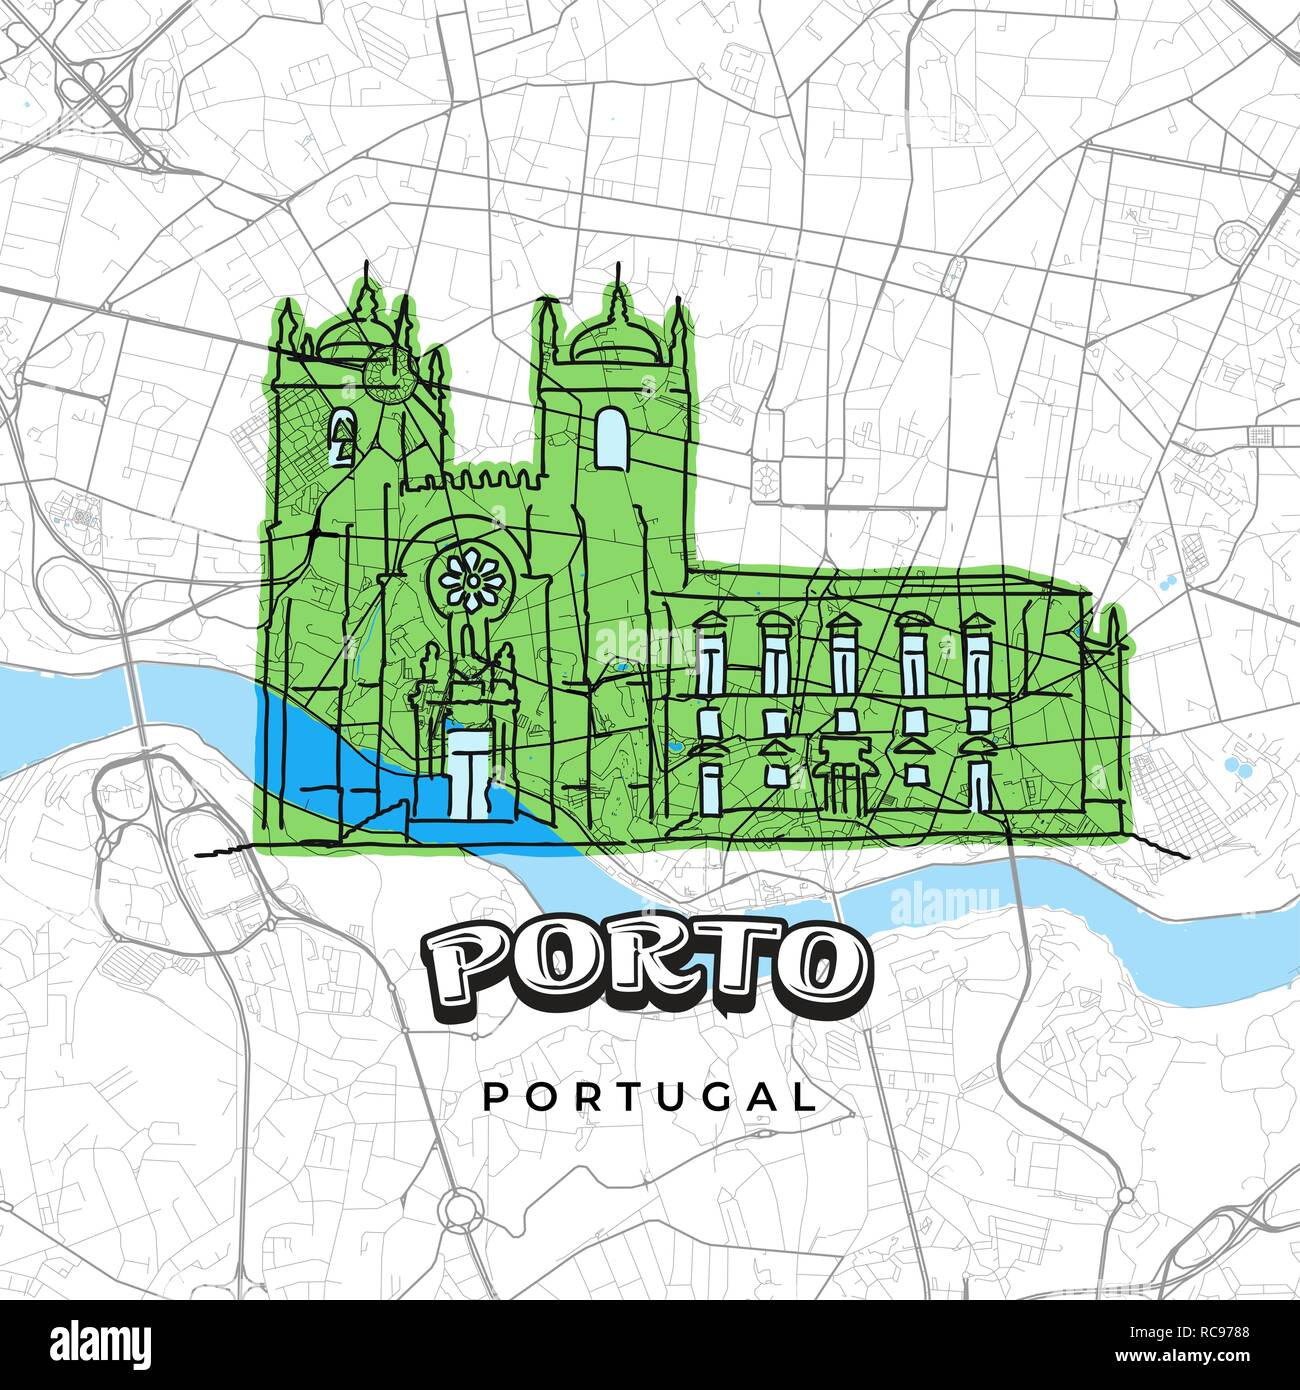 Porto Portugal Zeichnung auf Karte anzeigen. Handgezeichneten Vector Illustration. Berühmte Reiseziele Serie. Stock Vektor